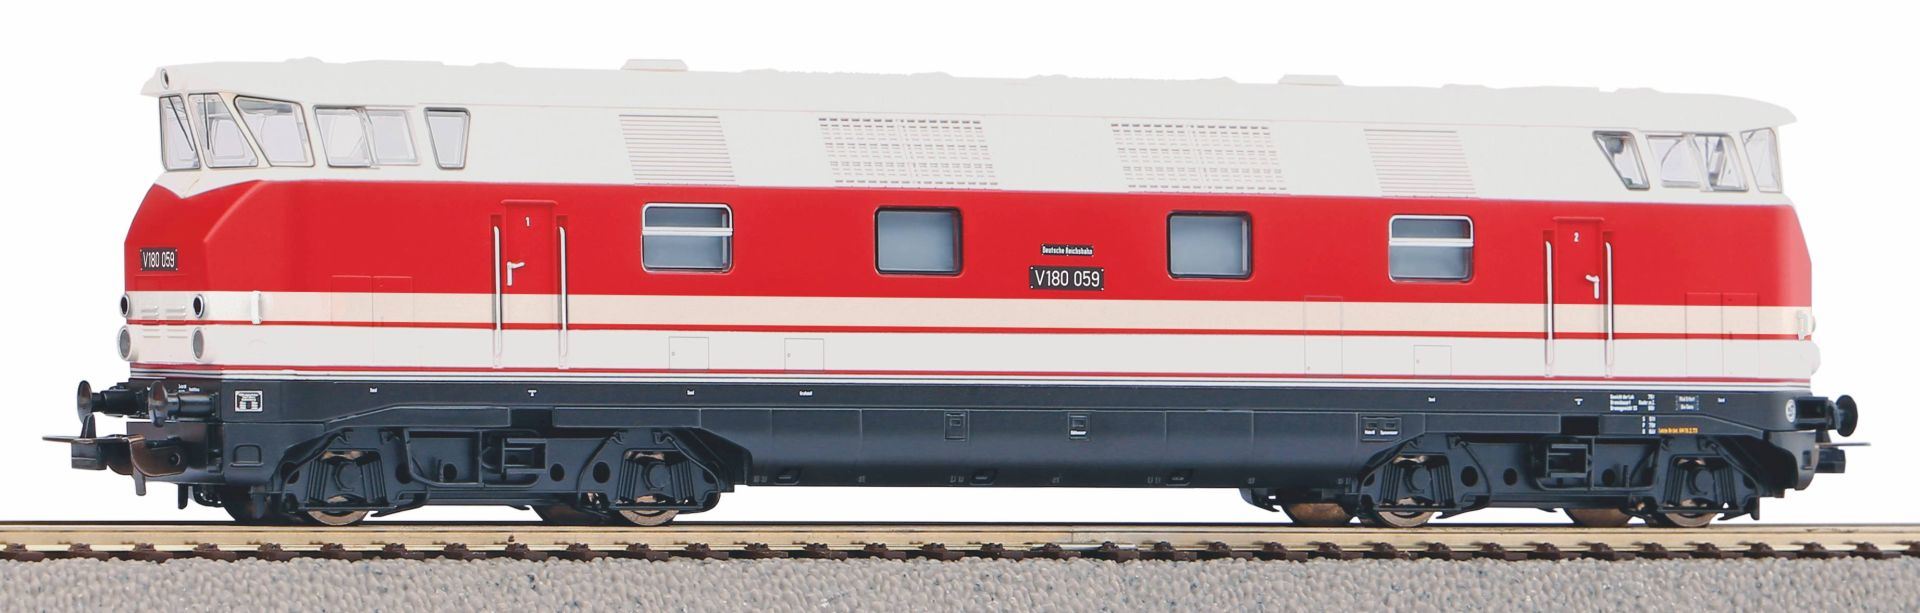 Piko 52581 - Diesellok V 180 059 mit Kanzel, DR, Ep.III